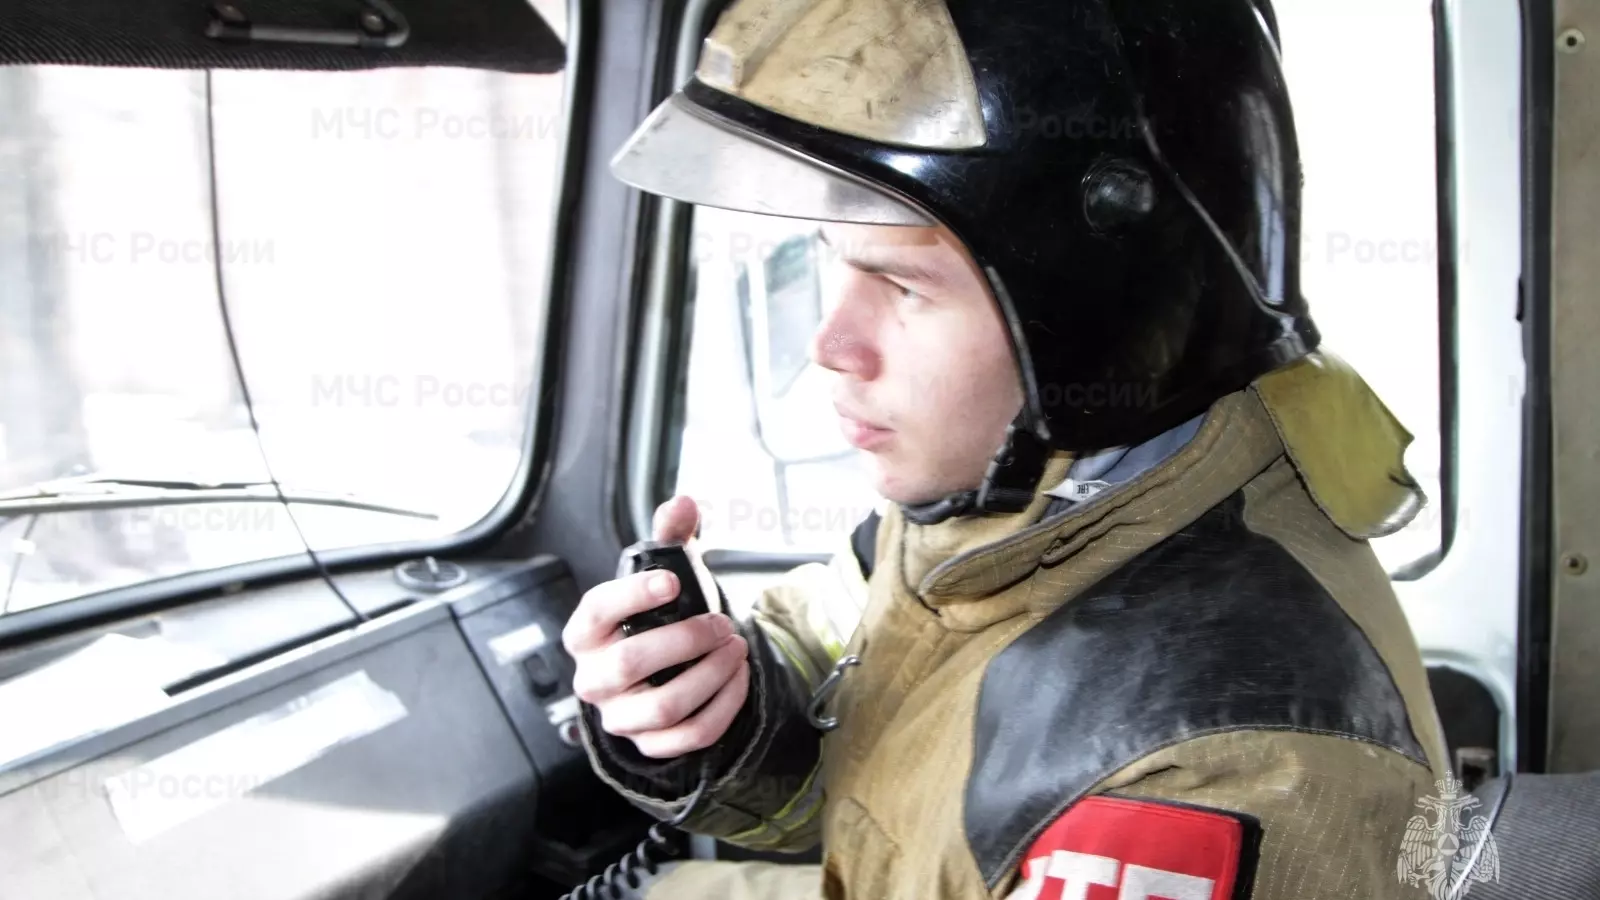 Звуки взрыва услышали жители Таганрога 1 апреля